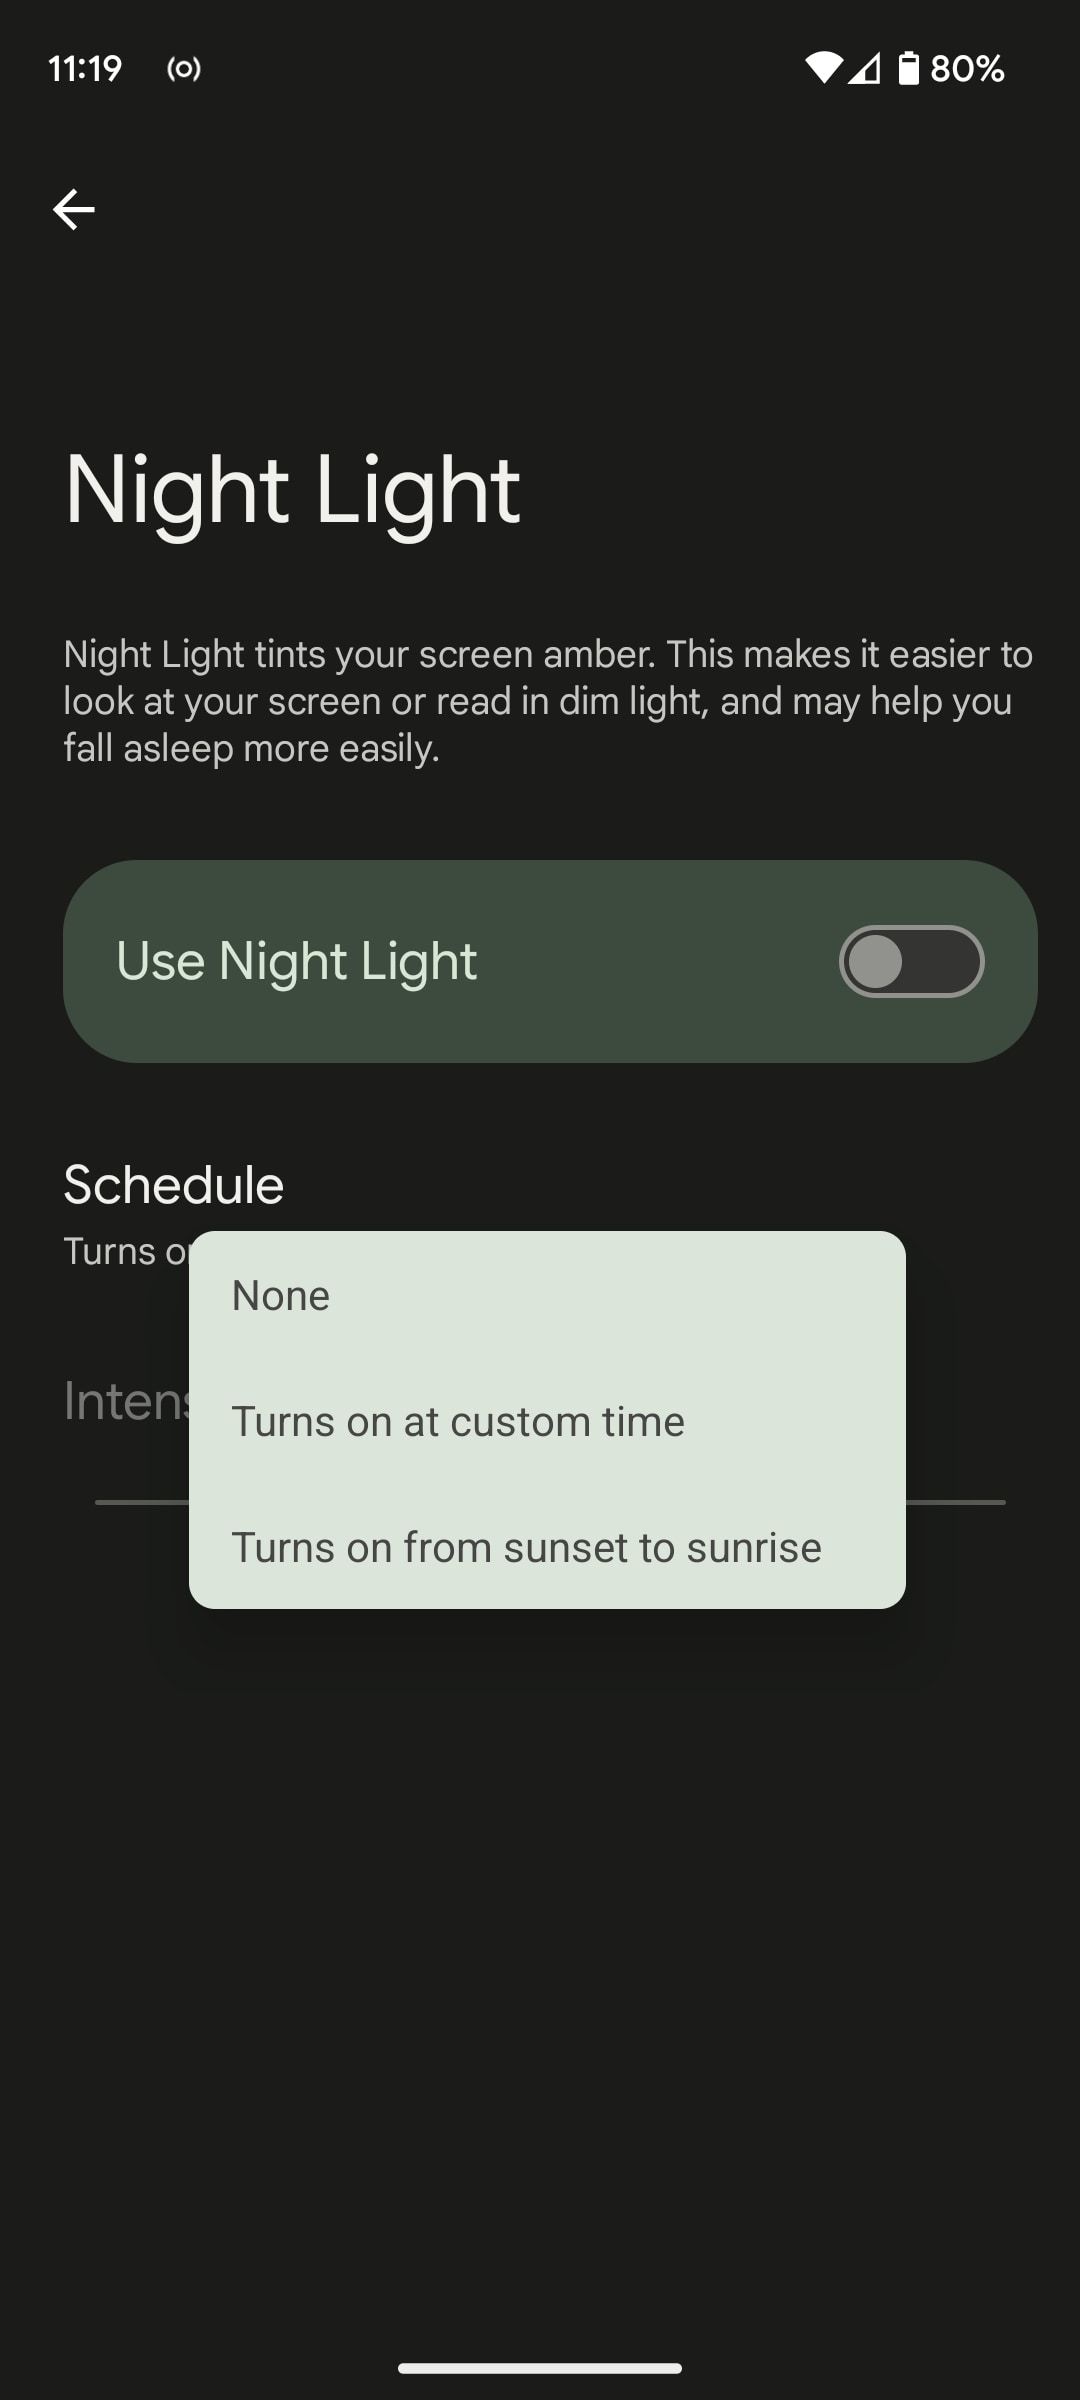 set up a night light schedule